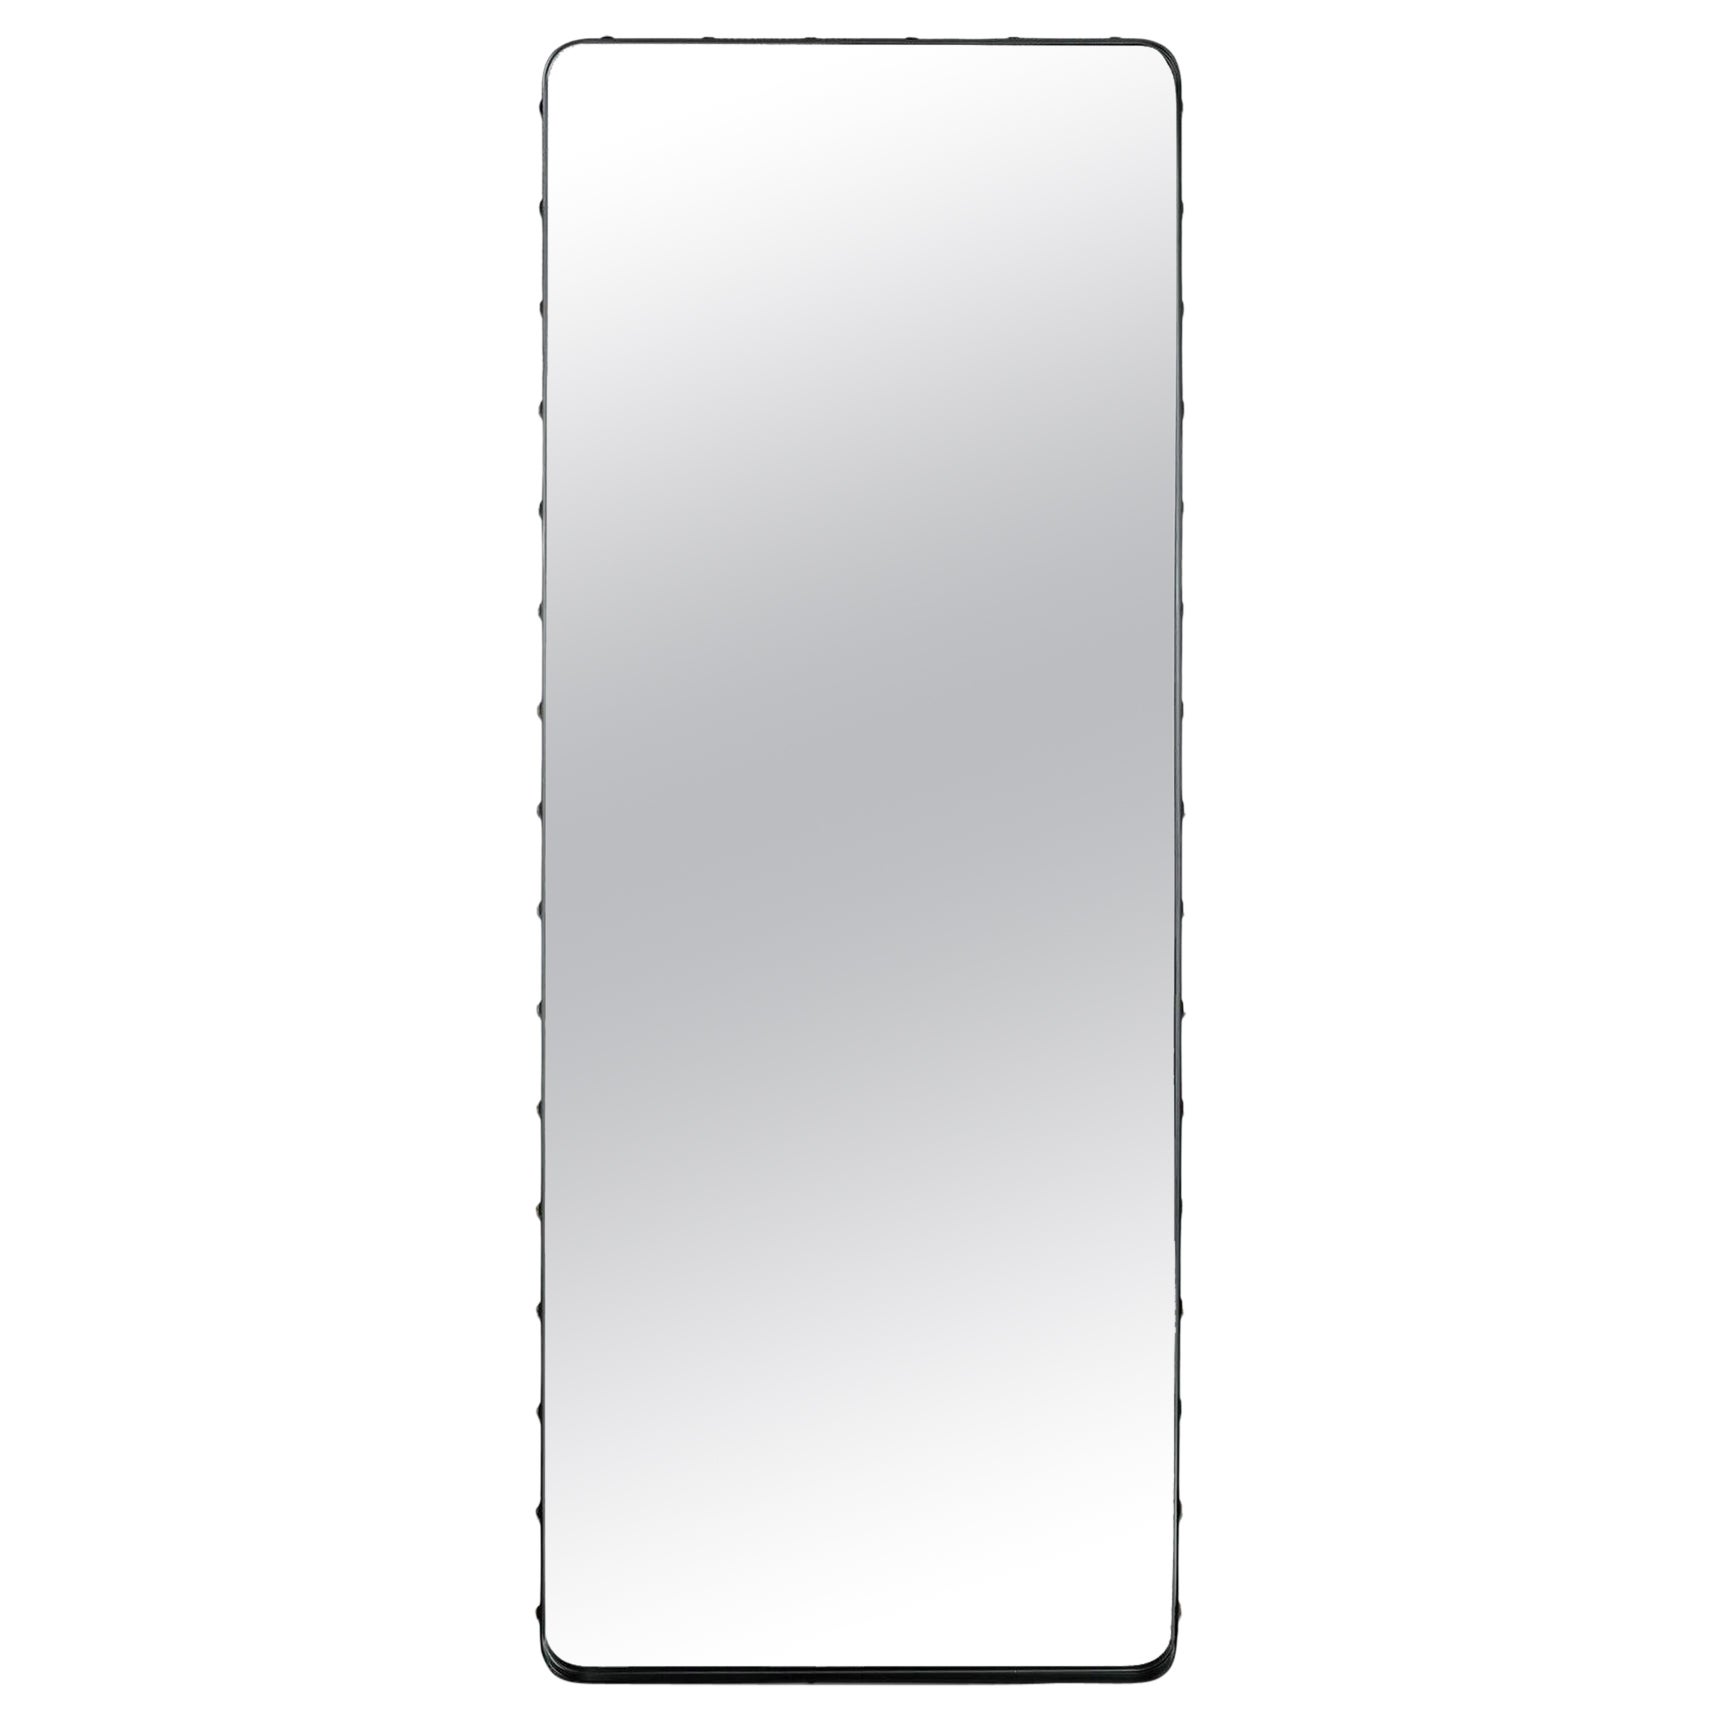 Grand miroir rectangulaire Adnet de Gubi